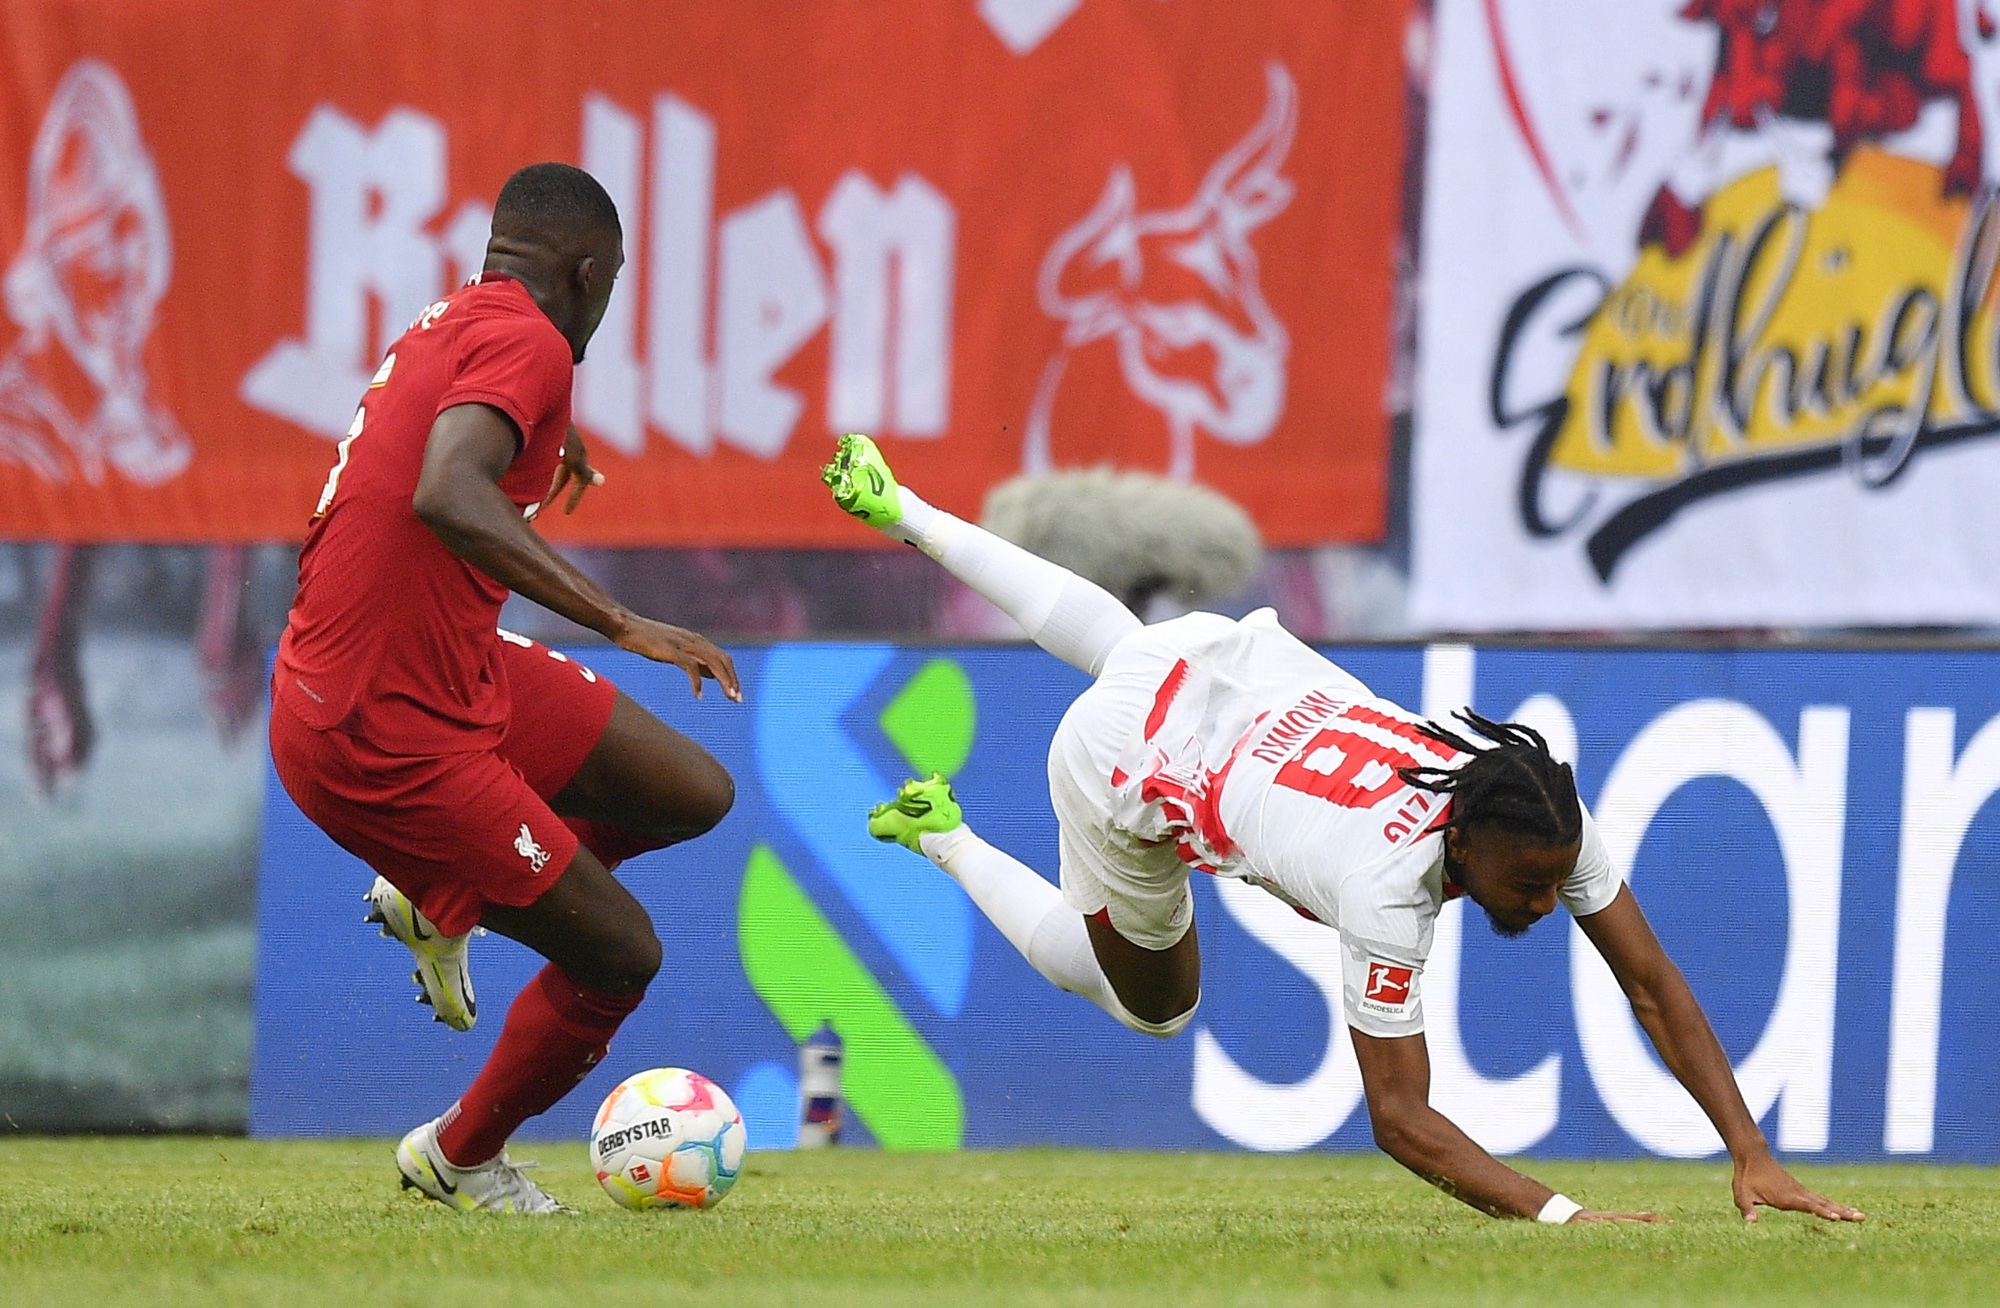 Tân binh Nunez tỏa sáng, Liverpool thắng nhẹ 5 bàn bò đỏ Leipzig - Ảnh 1.